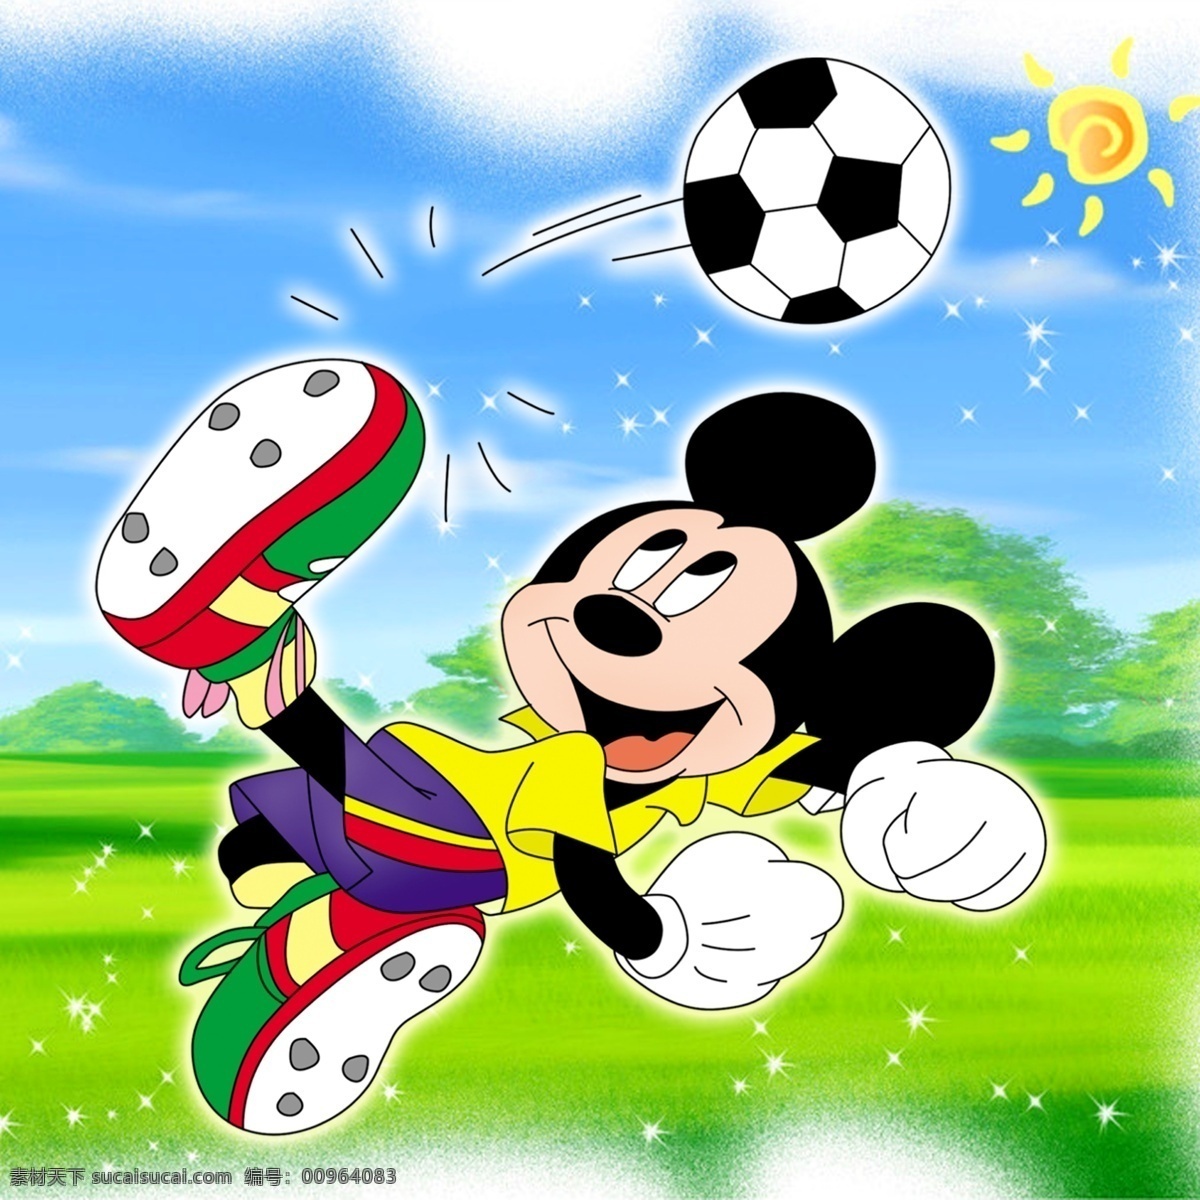 分层 迪士尼 动画 卡通 卡通psd 老鼠 米老鼠 米奇 模板下载 米奇妙妙屋 足球 源文件 矢量图 日常生活